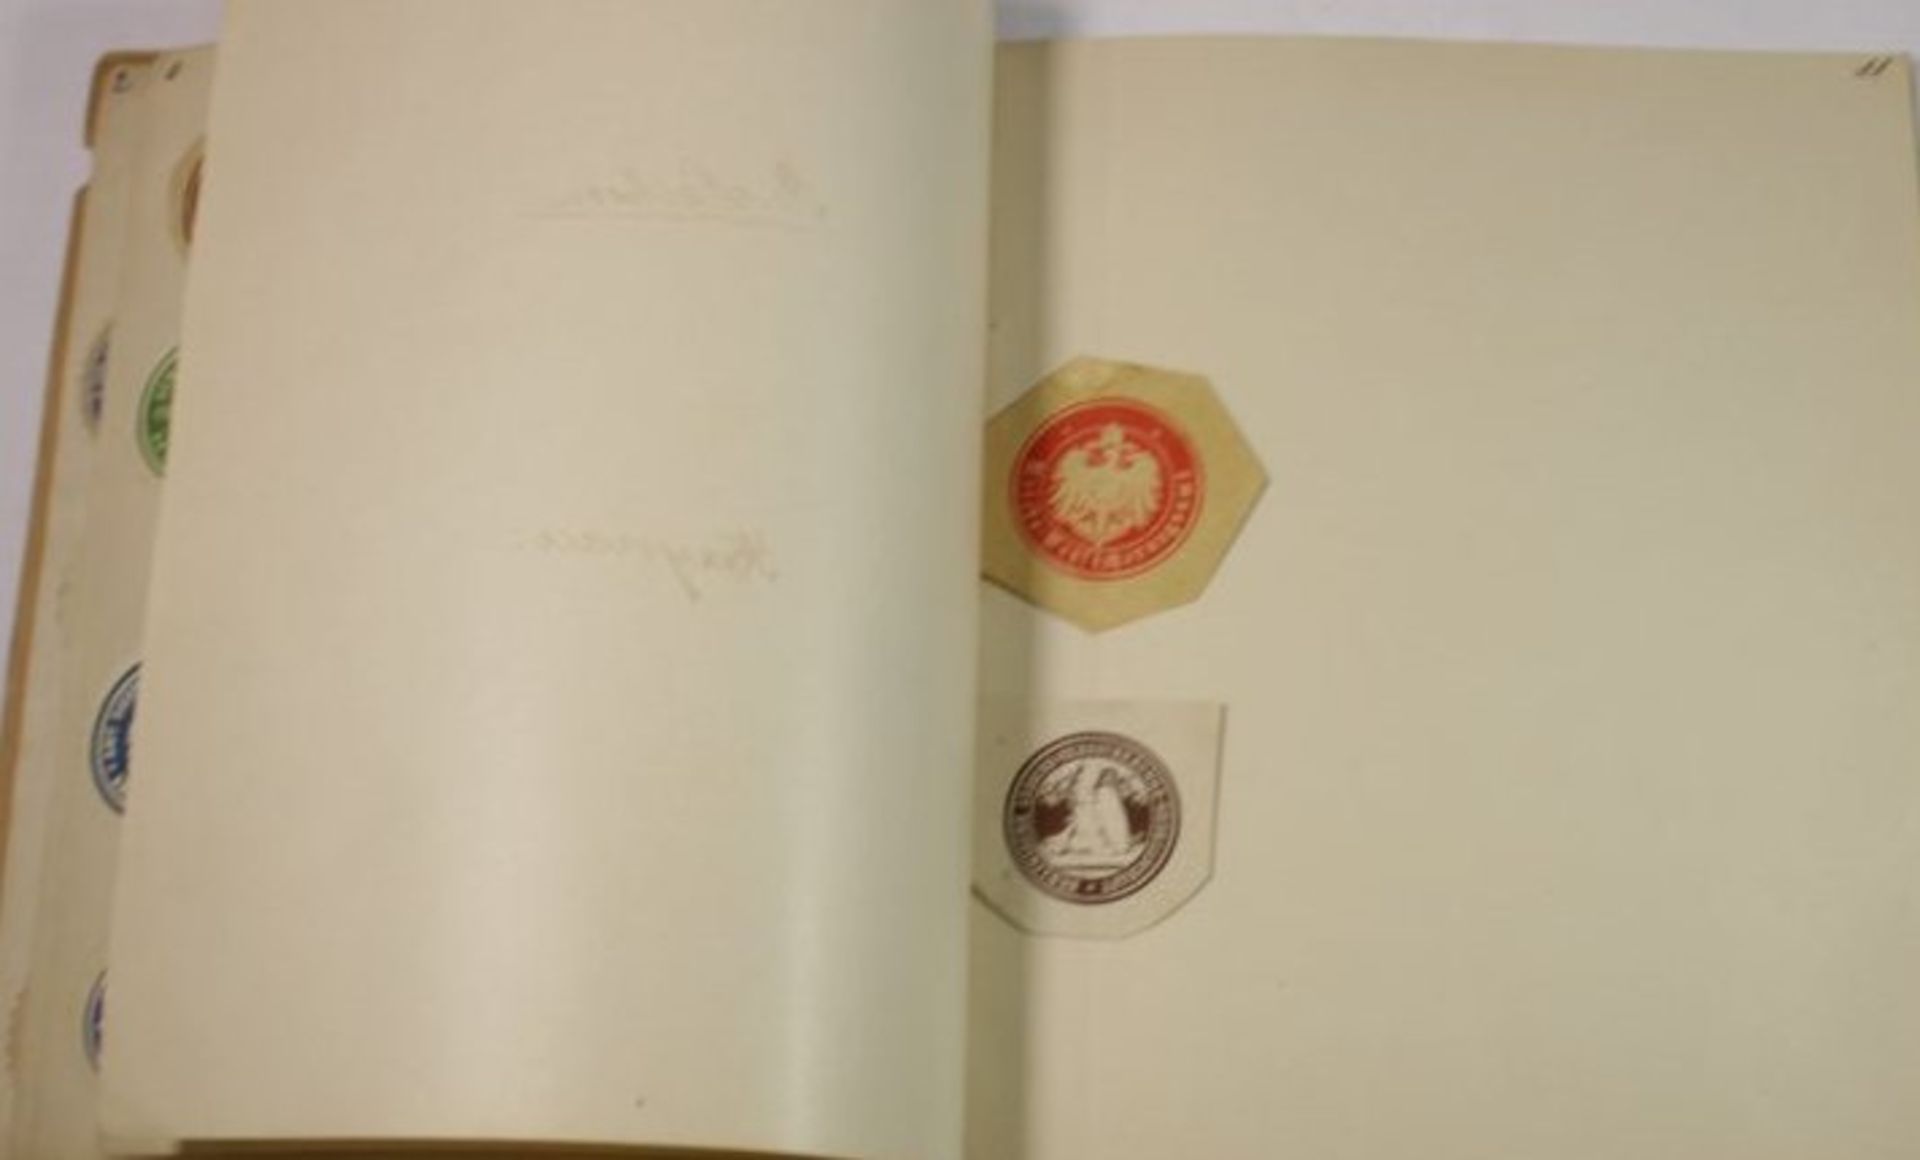 kl. Stempel-Sammlung, in Heft, um 1900, 9 Seiten mit Stempel.- - -22.61 % buyer's premium on the - Bild 3 aus 4